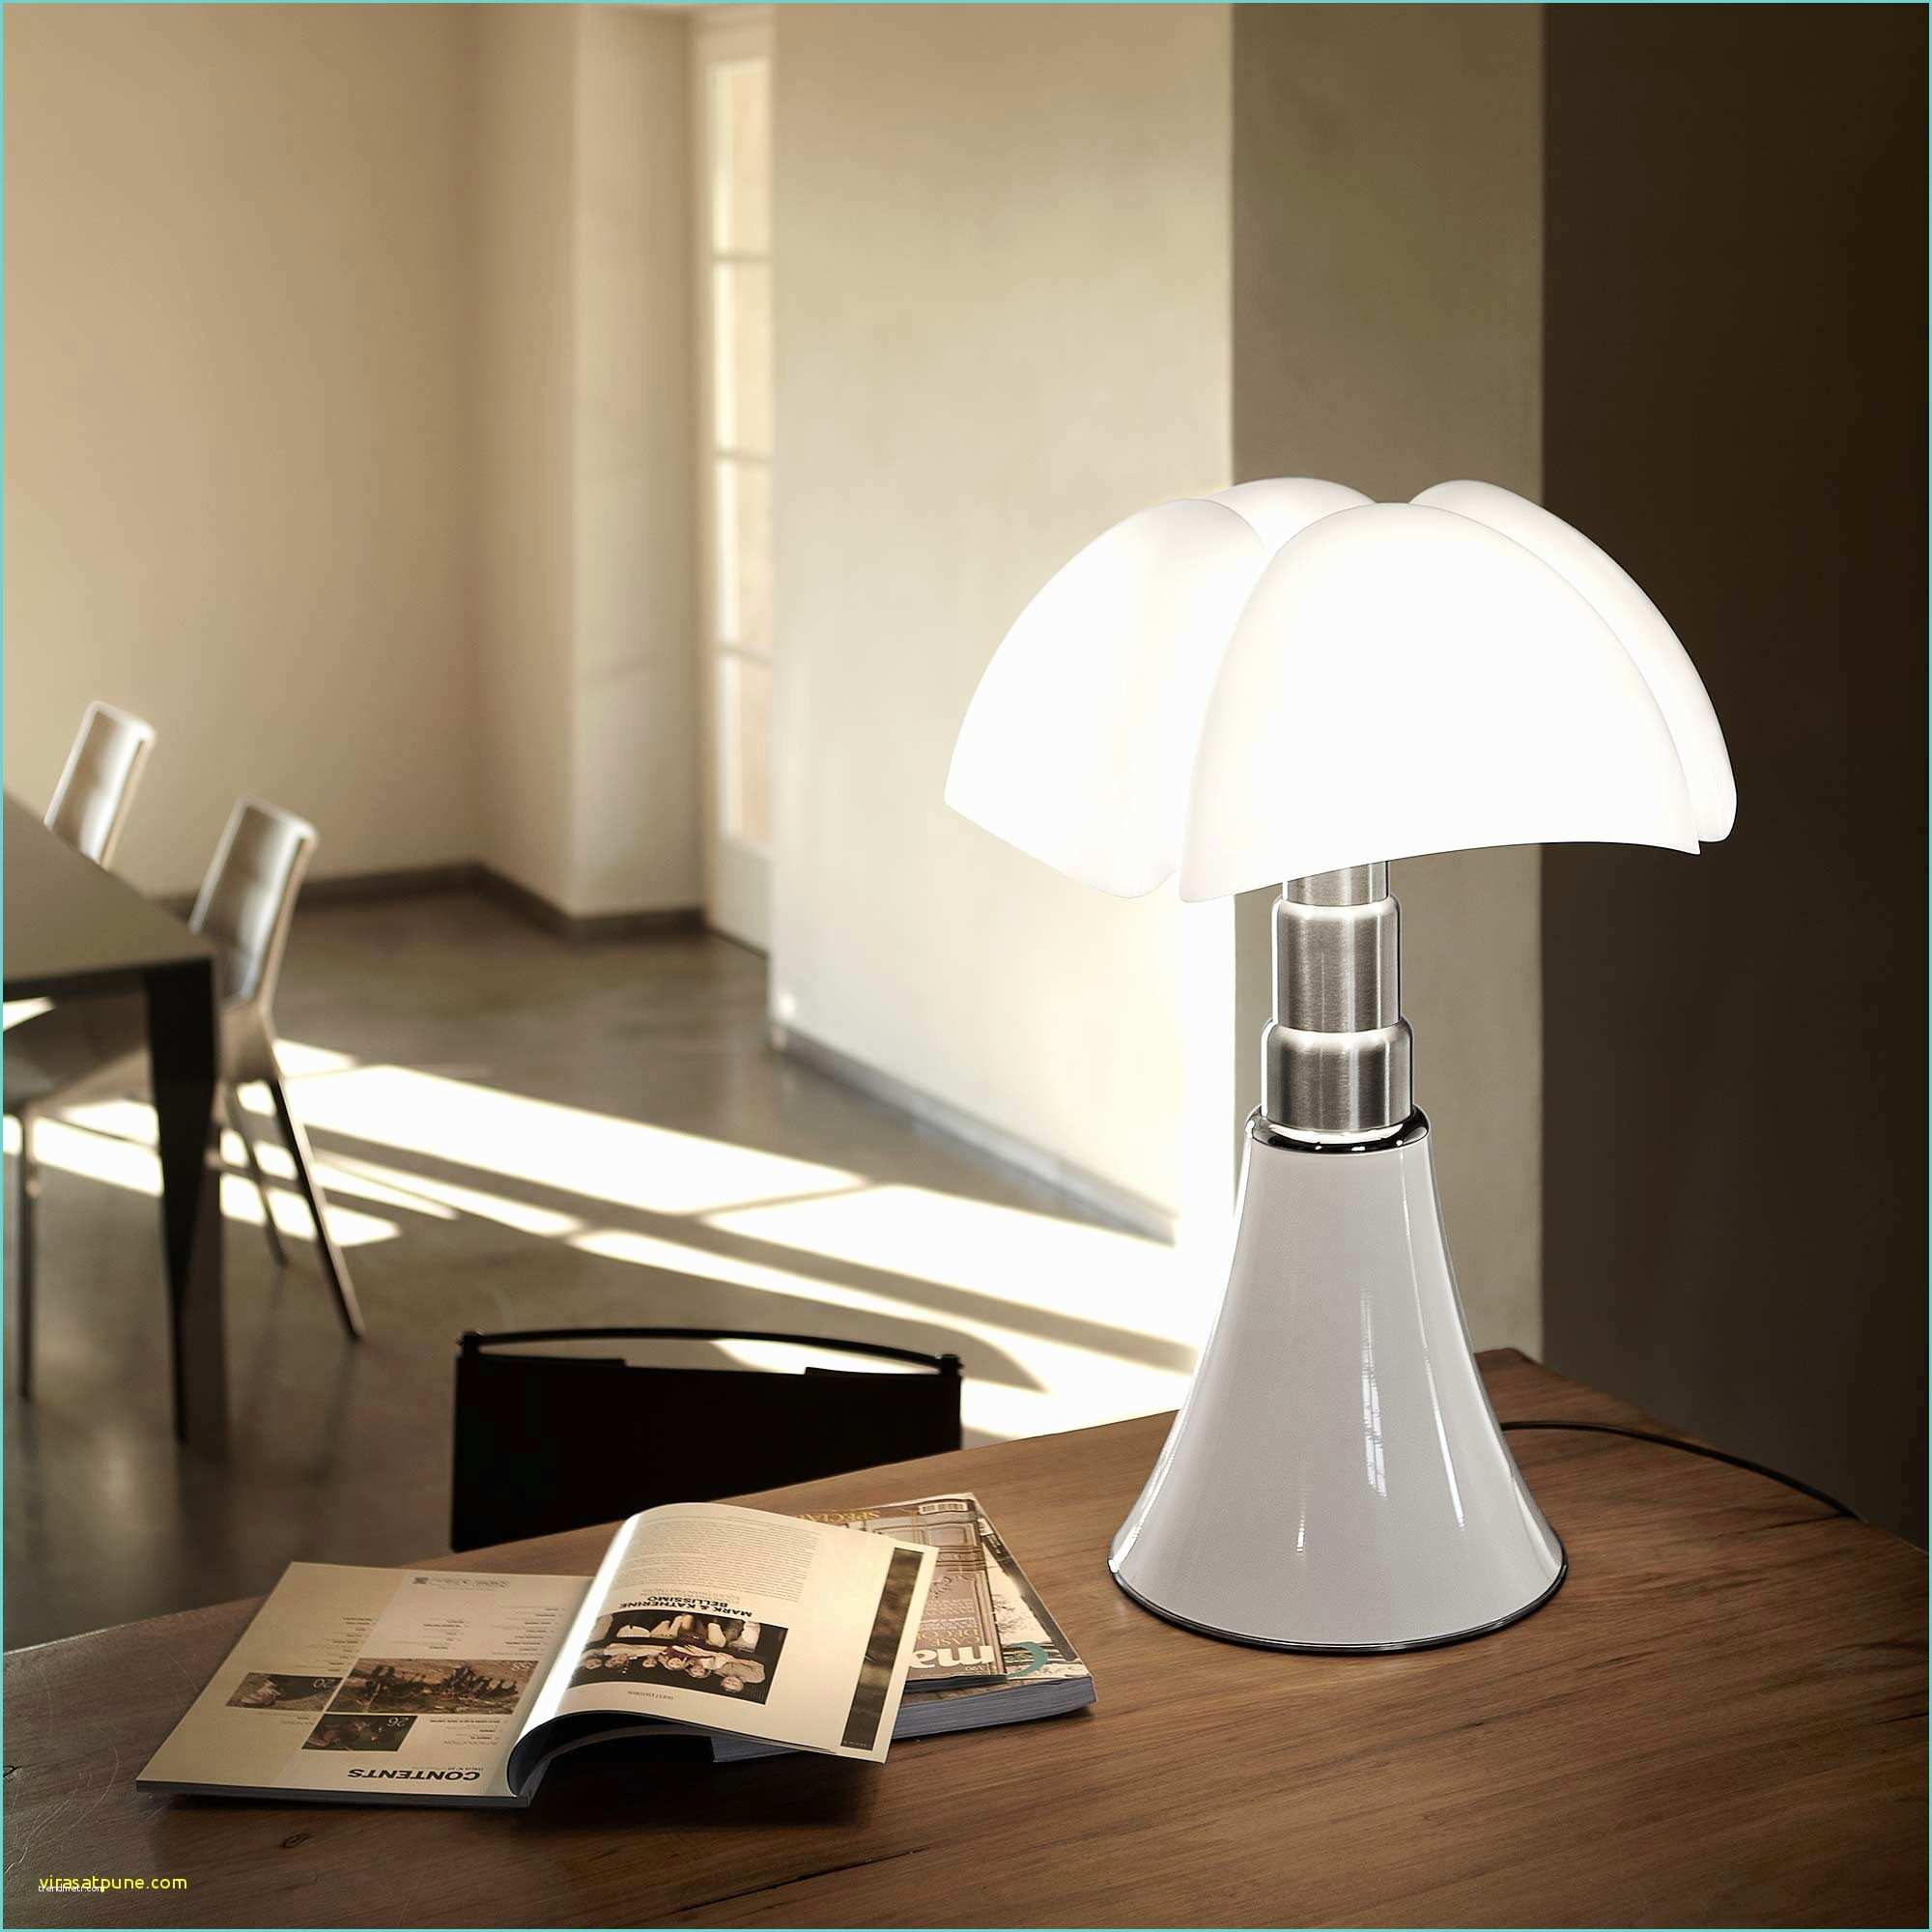 Lampe De Chevet Design Led Résultat Supérieur Lampe Chevet Led Élégant Best Lampe